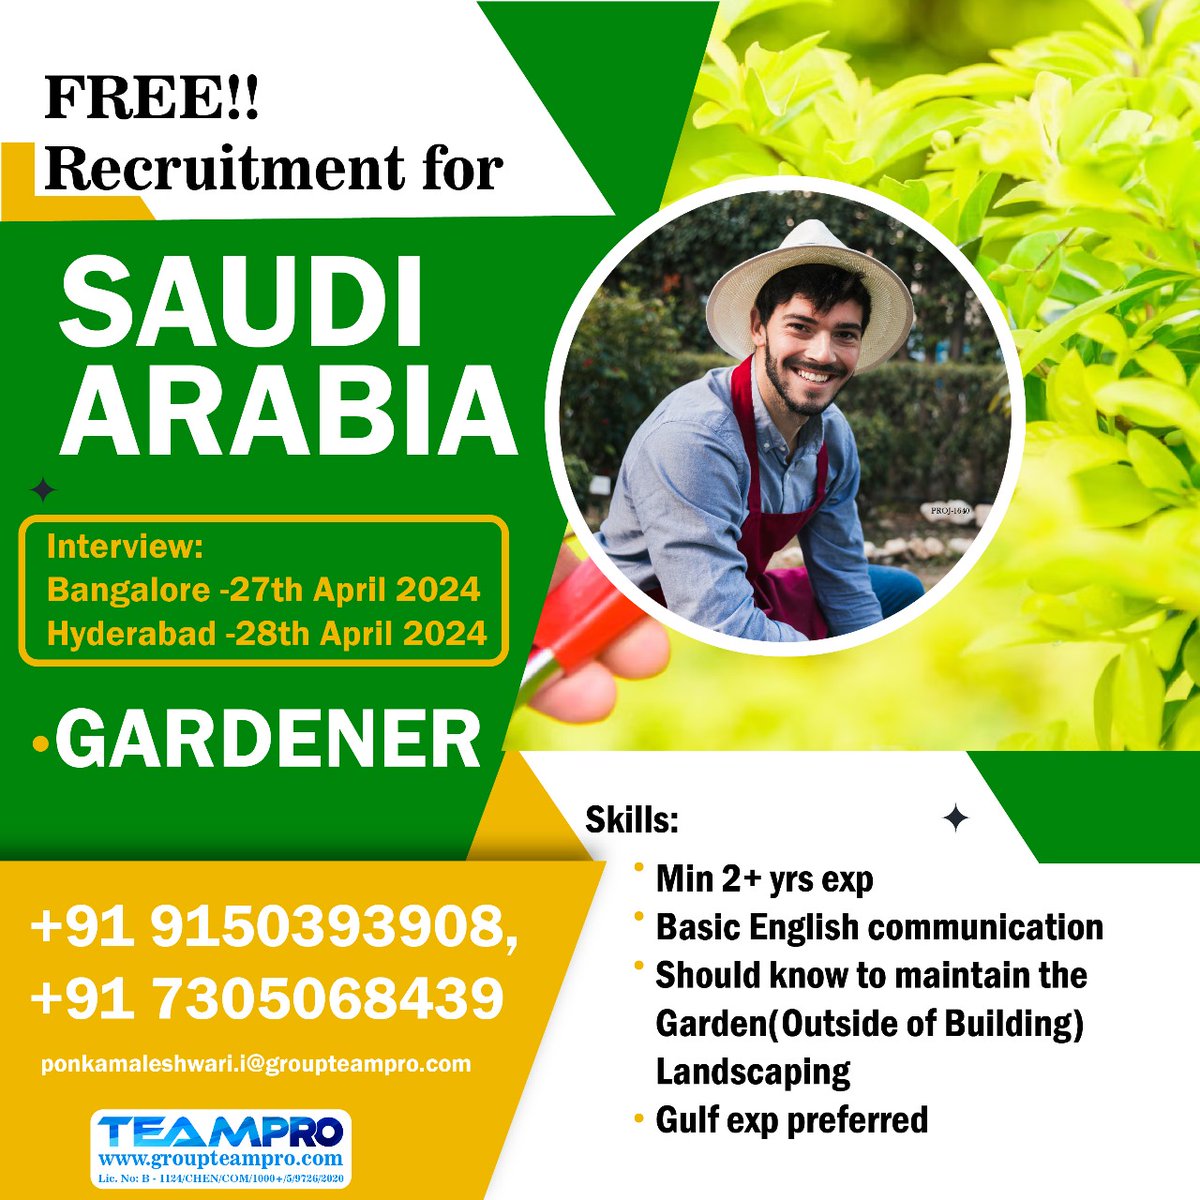 #freerecruitment #saudijobs #saudijobseekers #gardener #landscaping #immediatejoiners #shortlistingunderprogress #directinterview